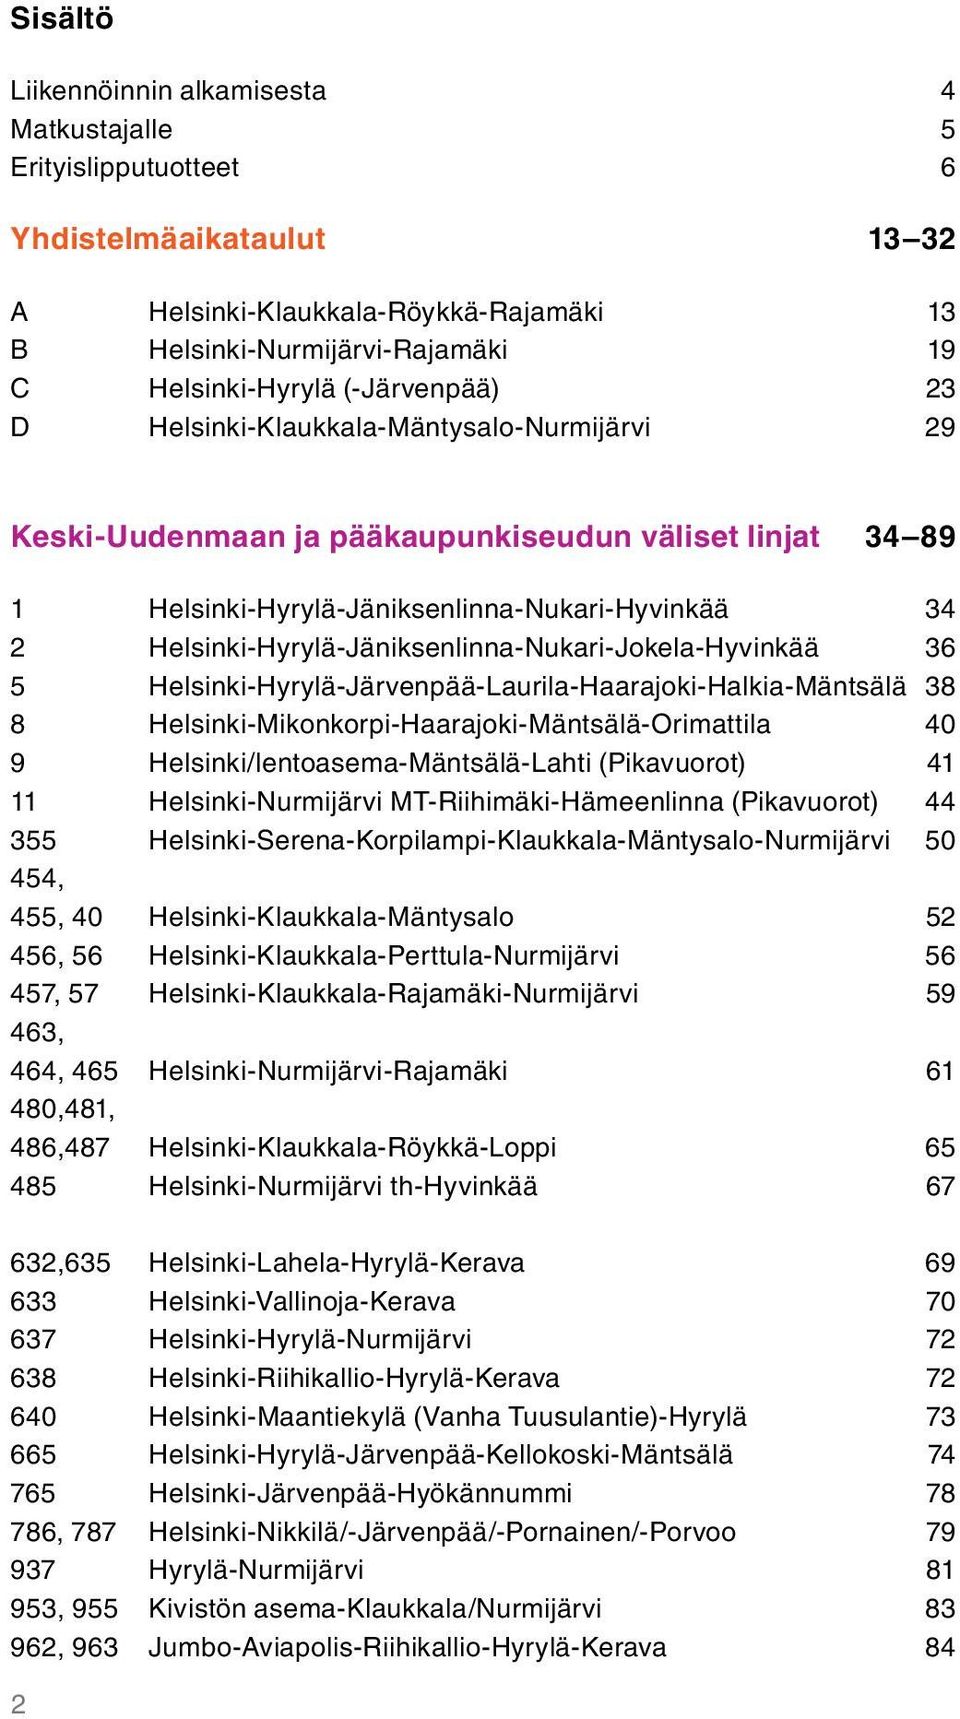 Helsinki-Hyrylä-Jäniksenlinna-Nukari-Jokela-Hyvinkää 36 5 Helsinki-Hyrylä-Järvenpää-Laurila-Haarajoki-Halkia-Mäntsälä 38 8 Helsinki-Mikonkorpi-Haarajoki-Mäntsälä-Orimattila 40 9